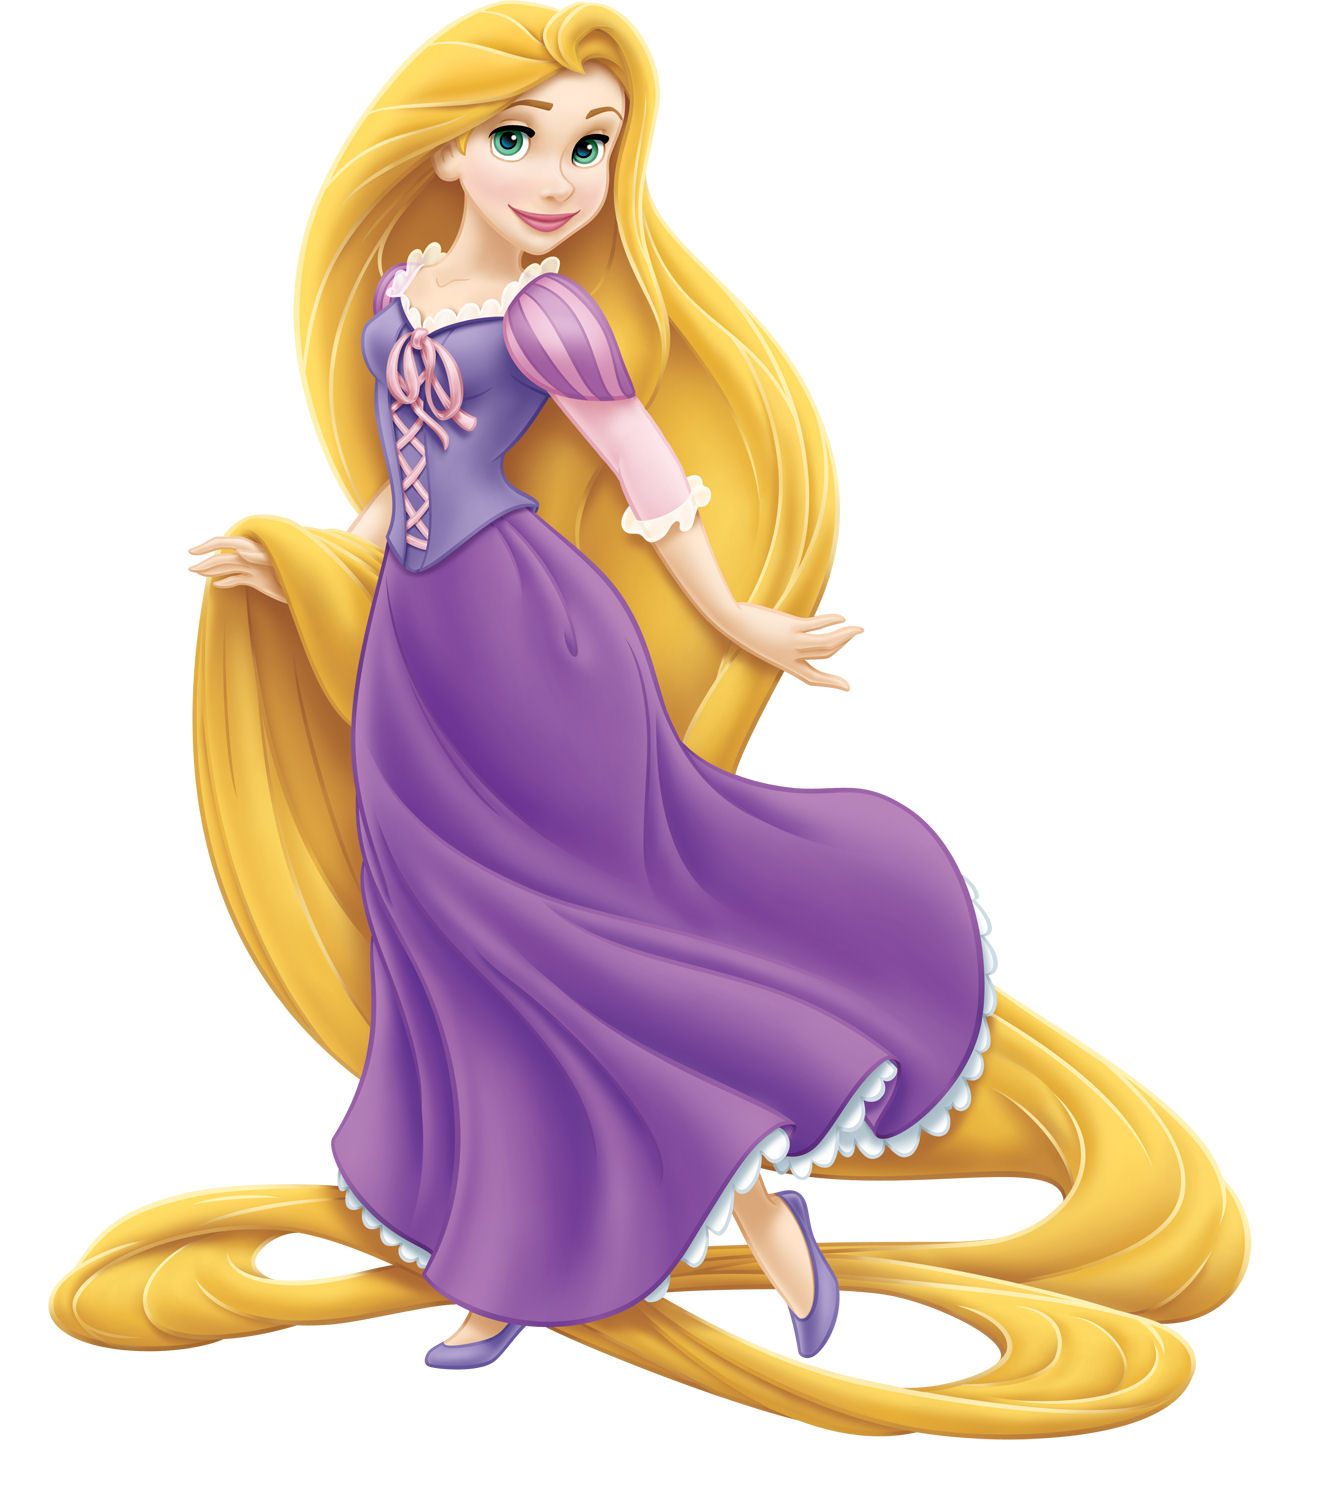 Another Rapunzel Pose - Disney Princess Photo (33150119 ...